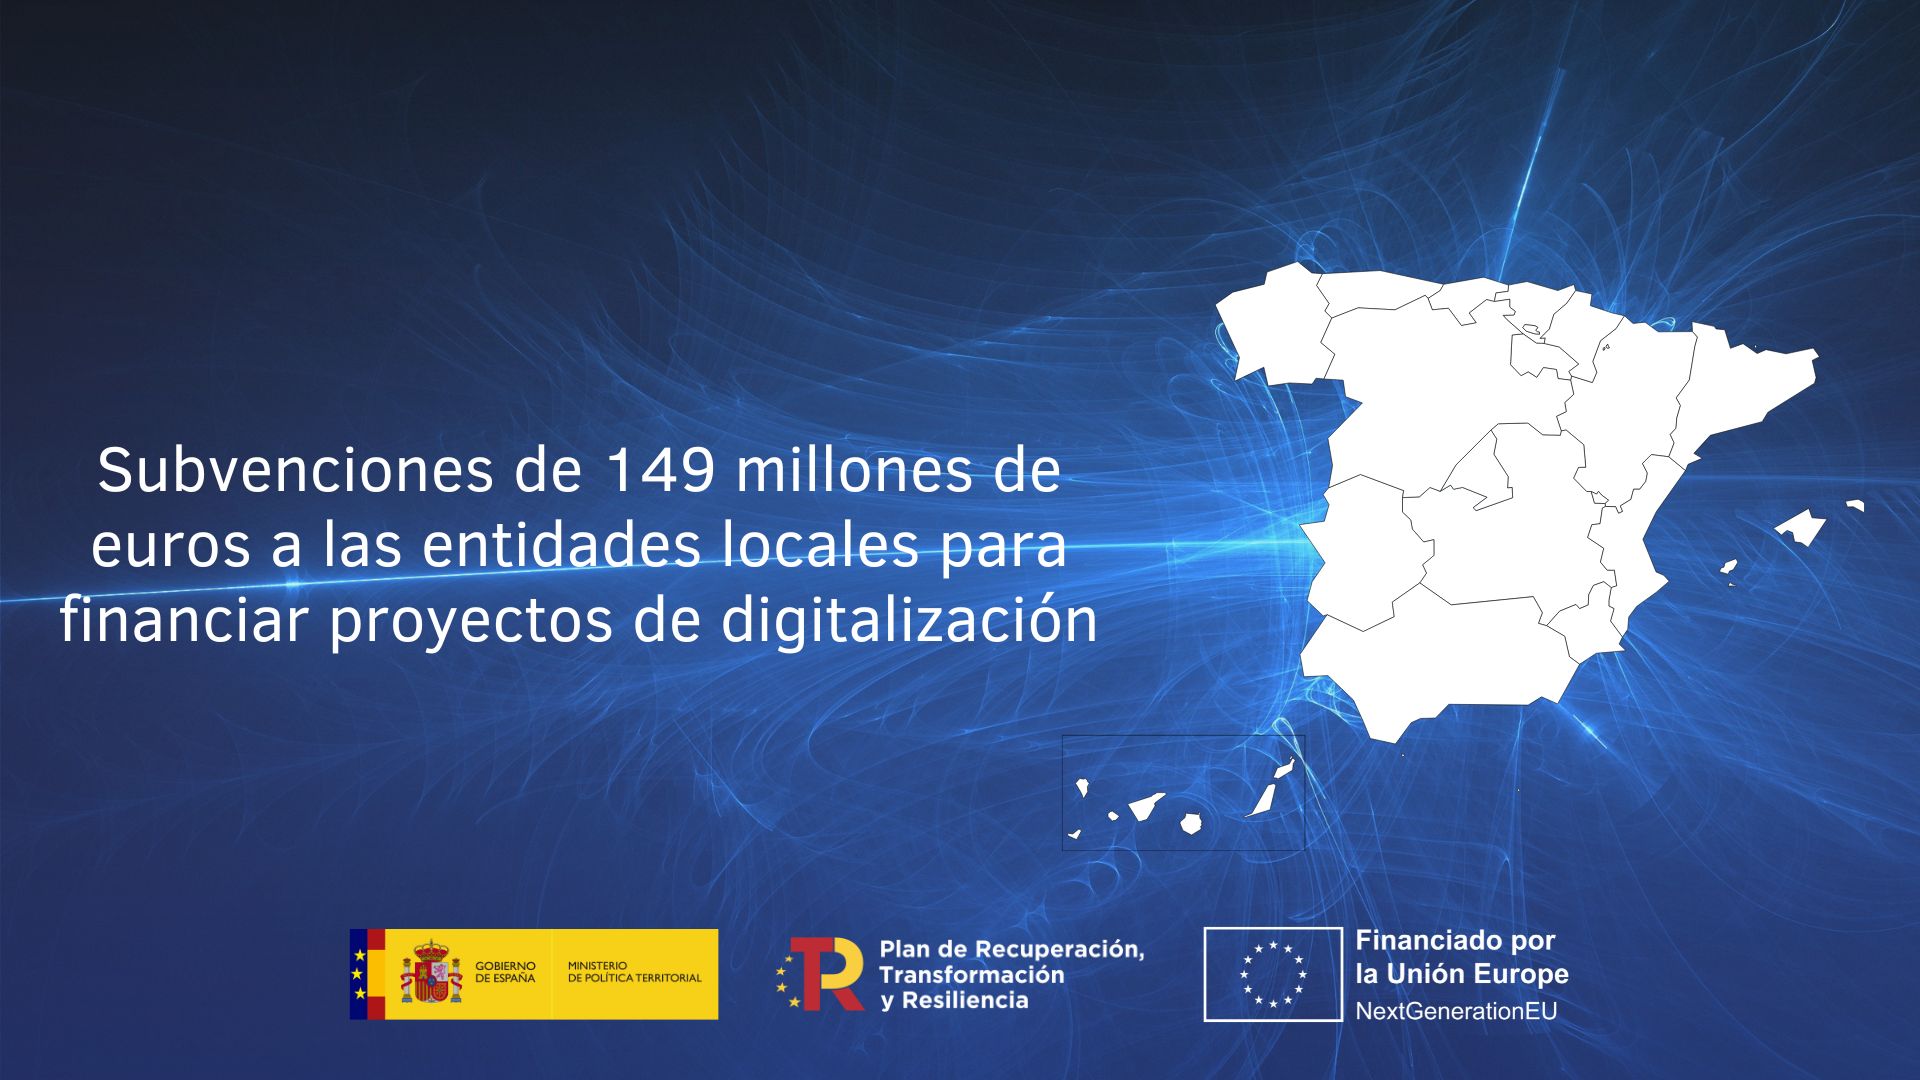 Subvenciones de 149 millones de euros a las entidades locales para financiar proyectos de digitalización con cargo a los fondos europeos